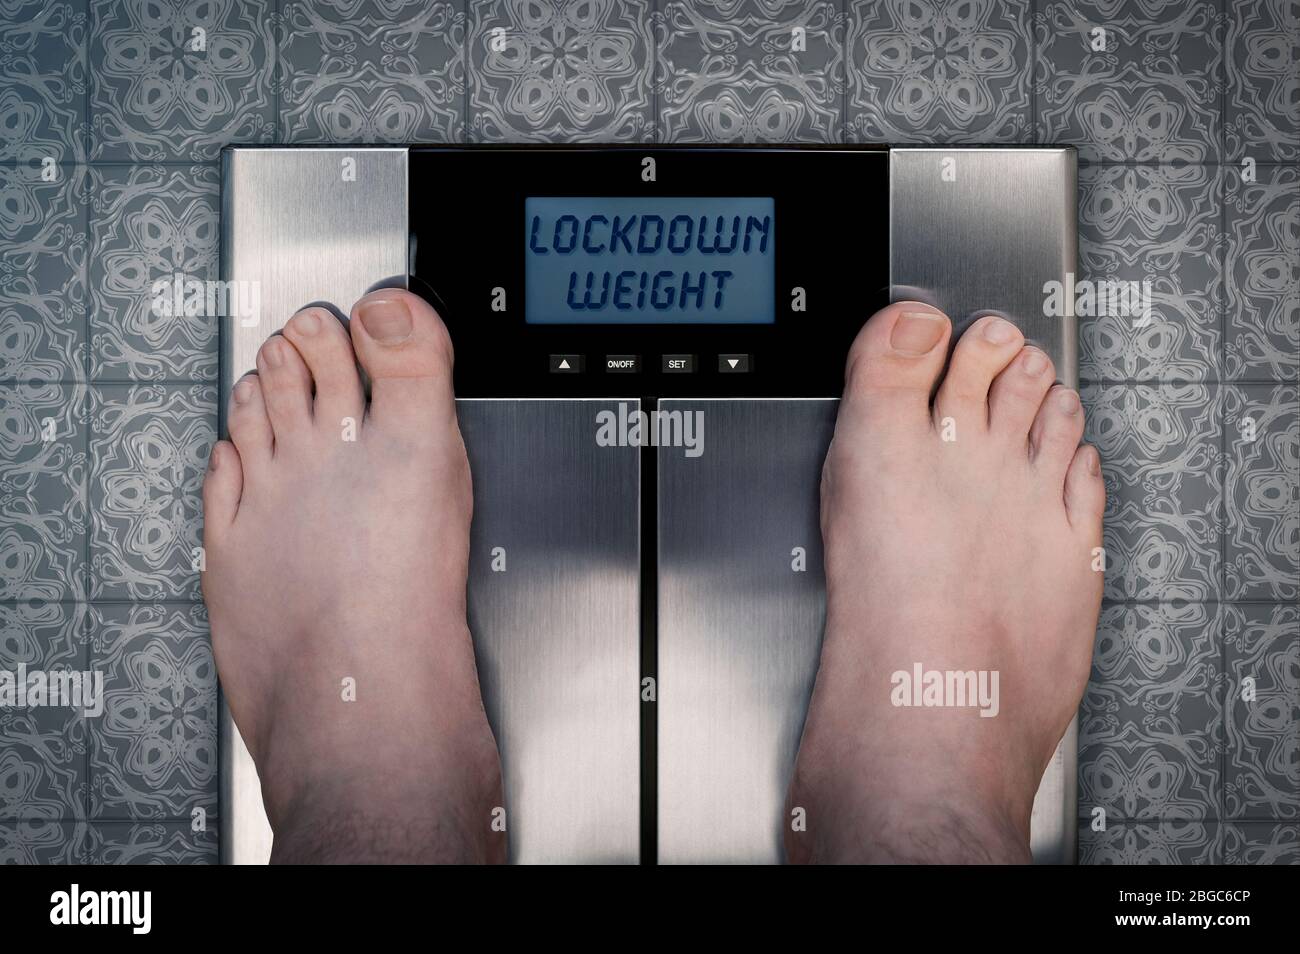 Weight Gain - Coronavirus Covid-19 Lockdown Diet Obesity concept Stock Photo